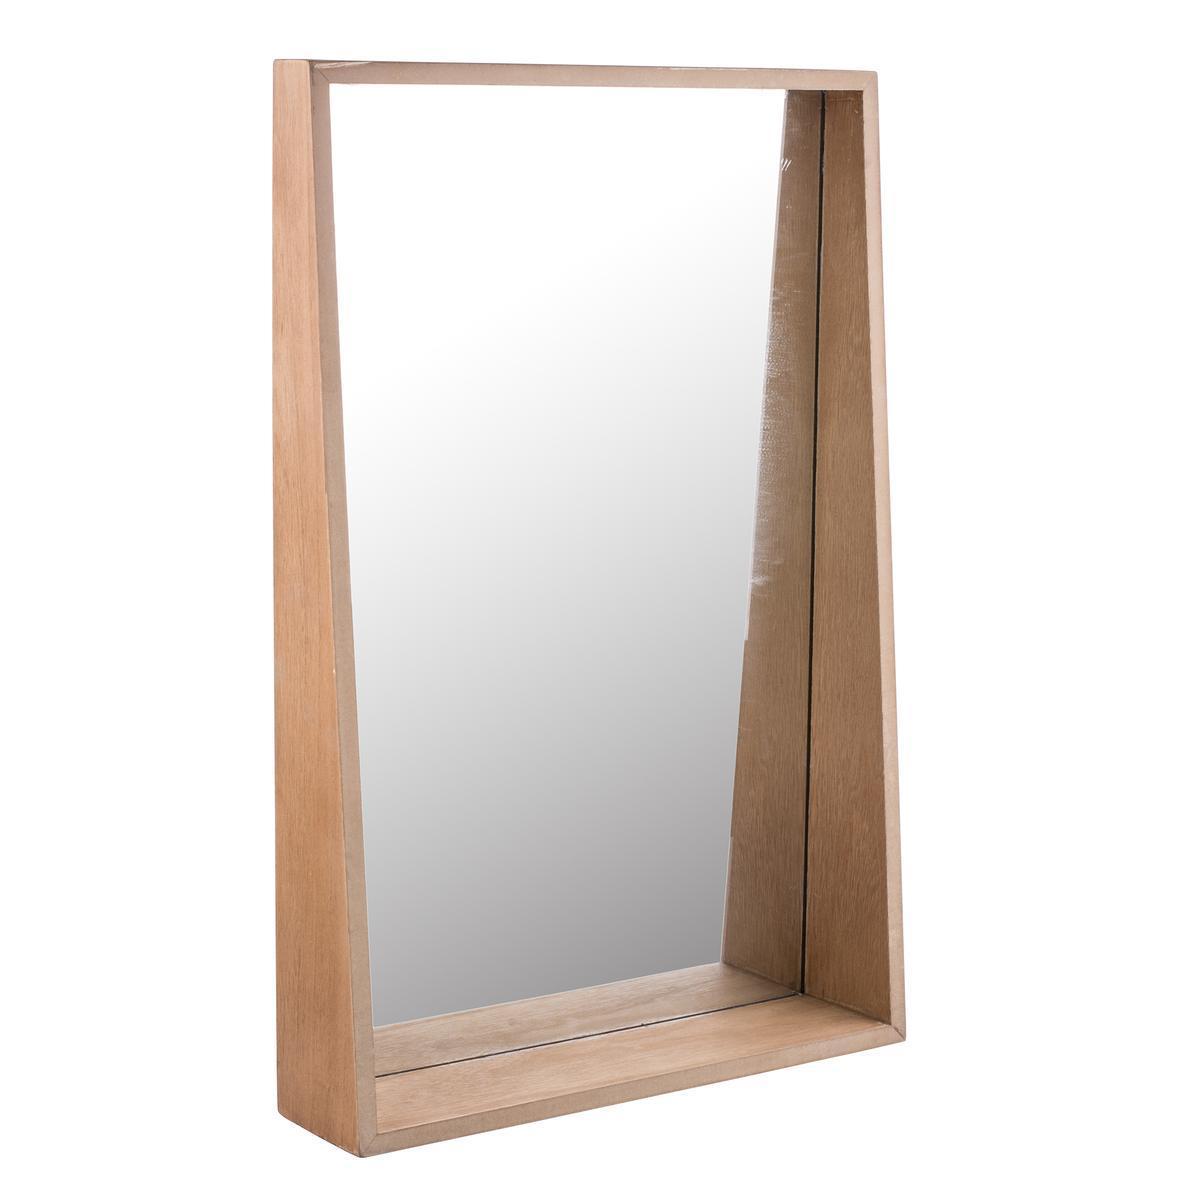 Miroir étagère - 40 x 9 x H 60 cm